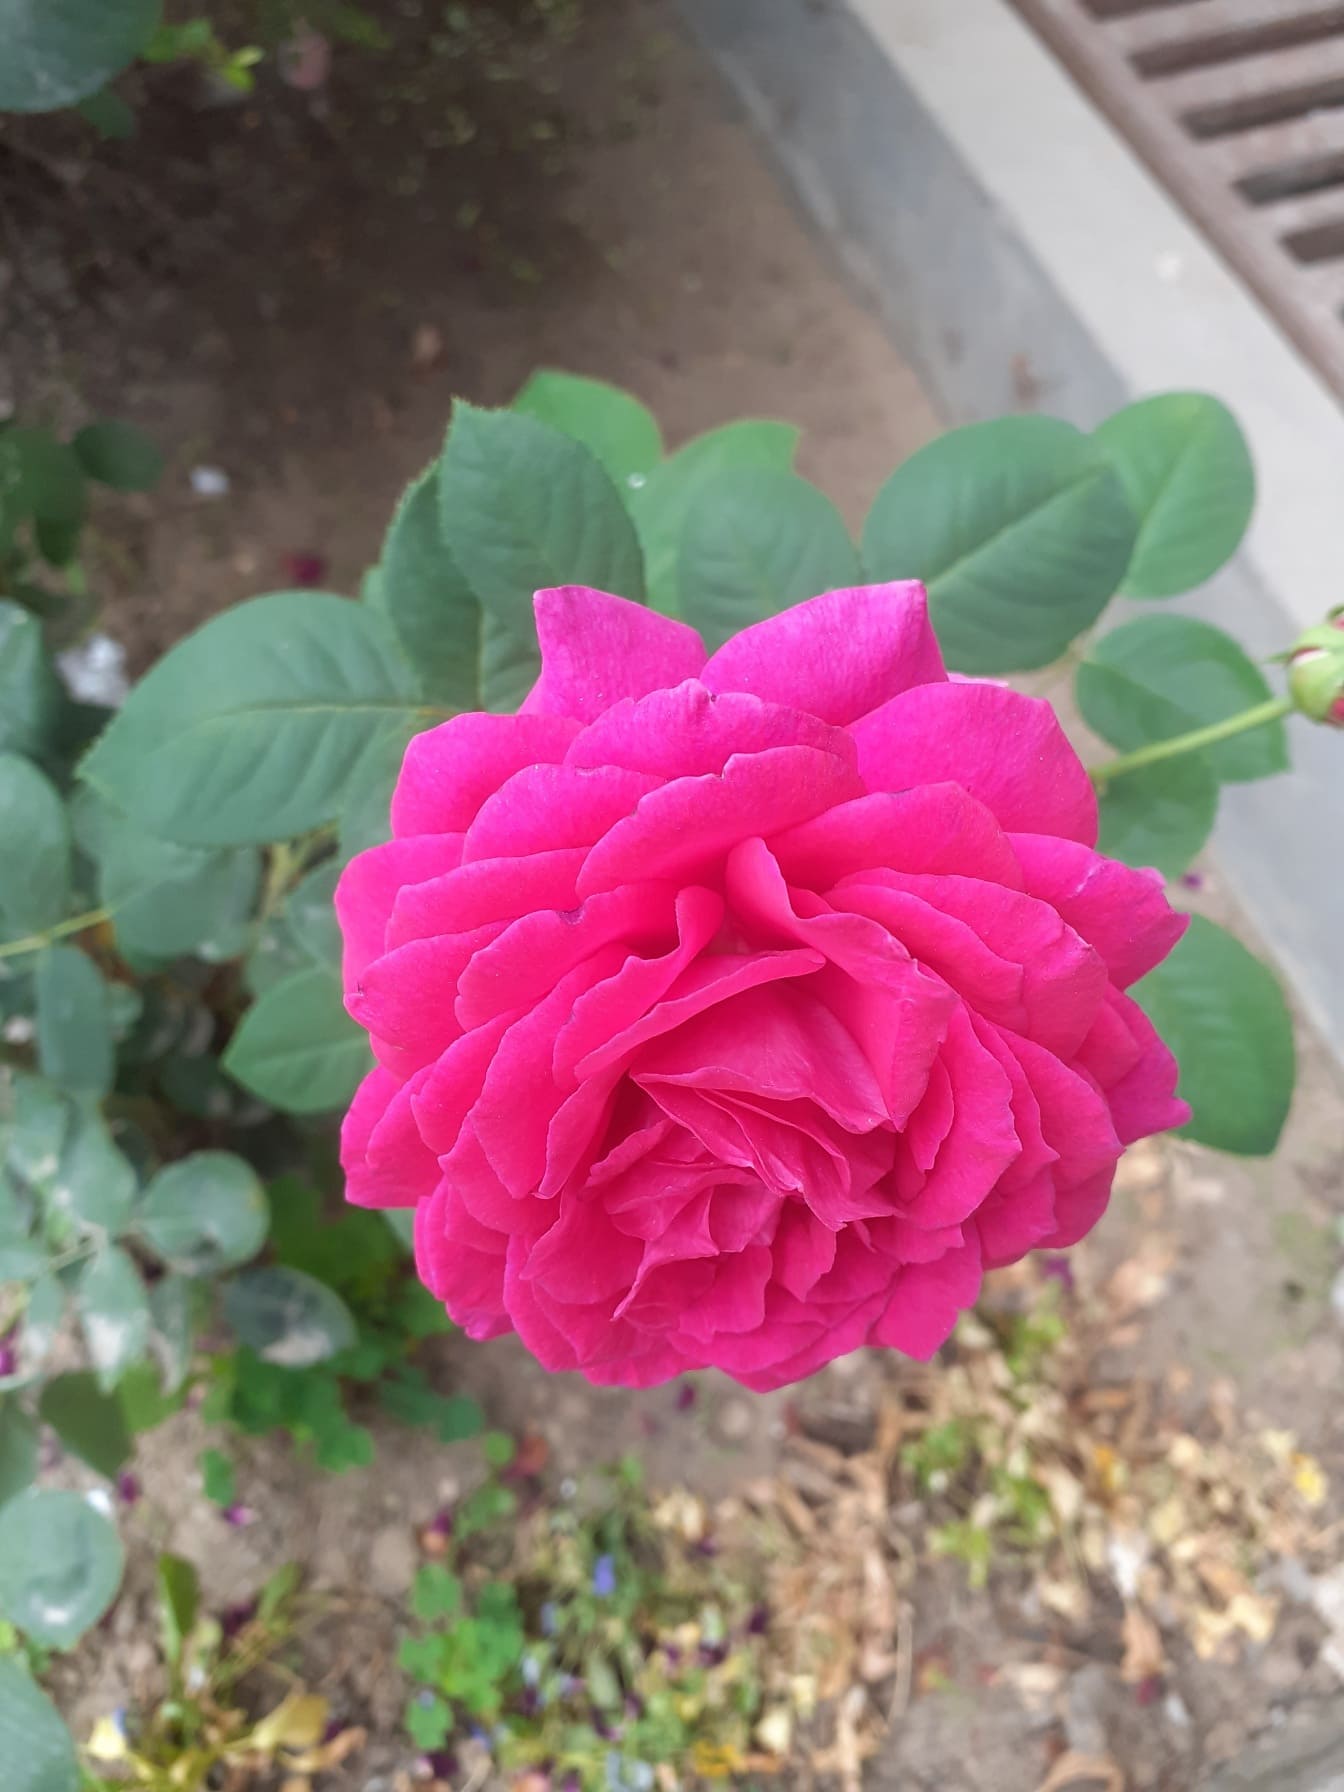 Hoa hồng hồng hồng tươi trong ảnh cận cảnh khu vườn